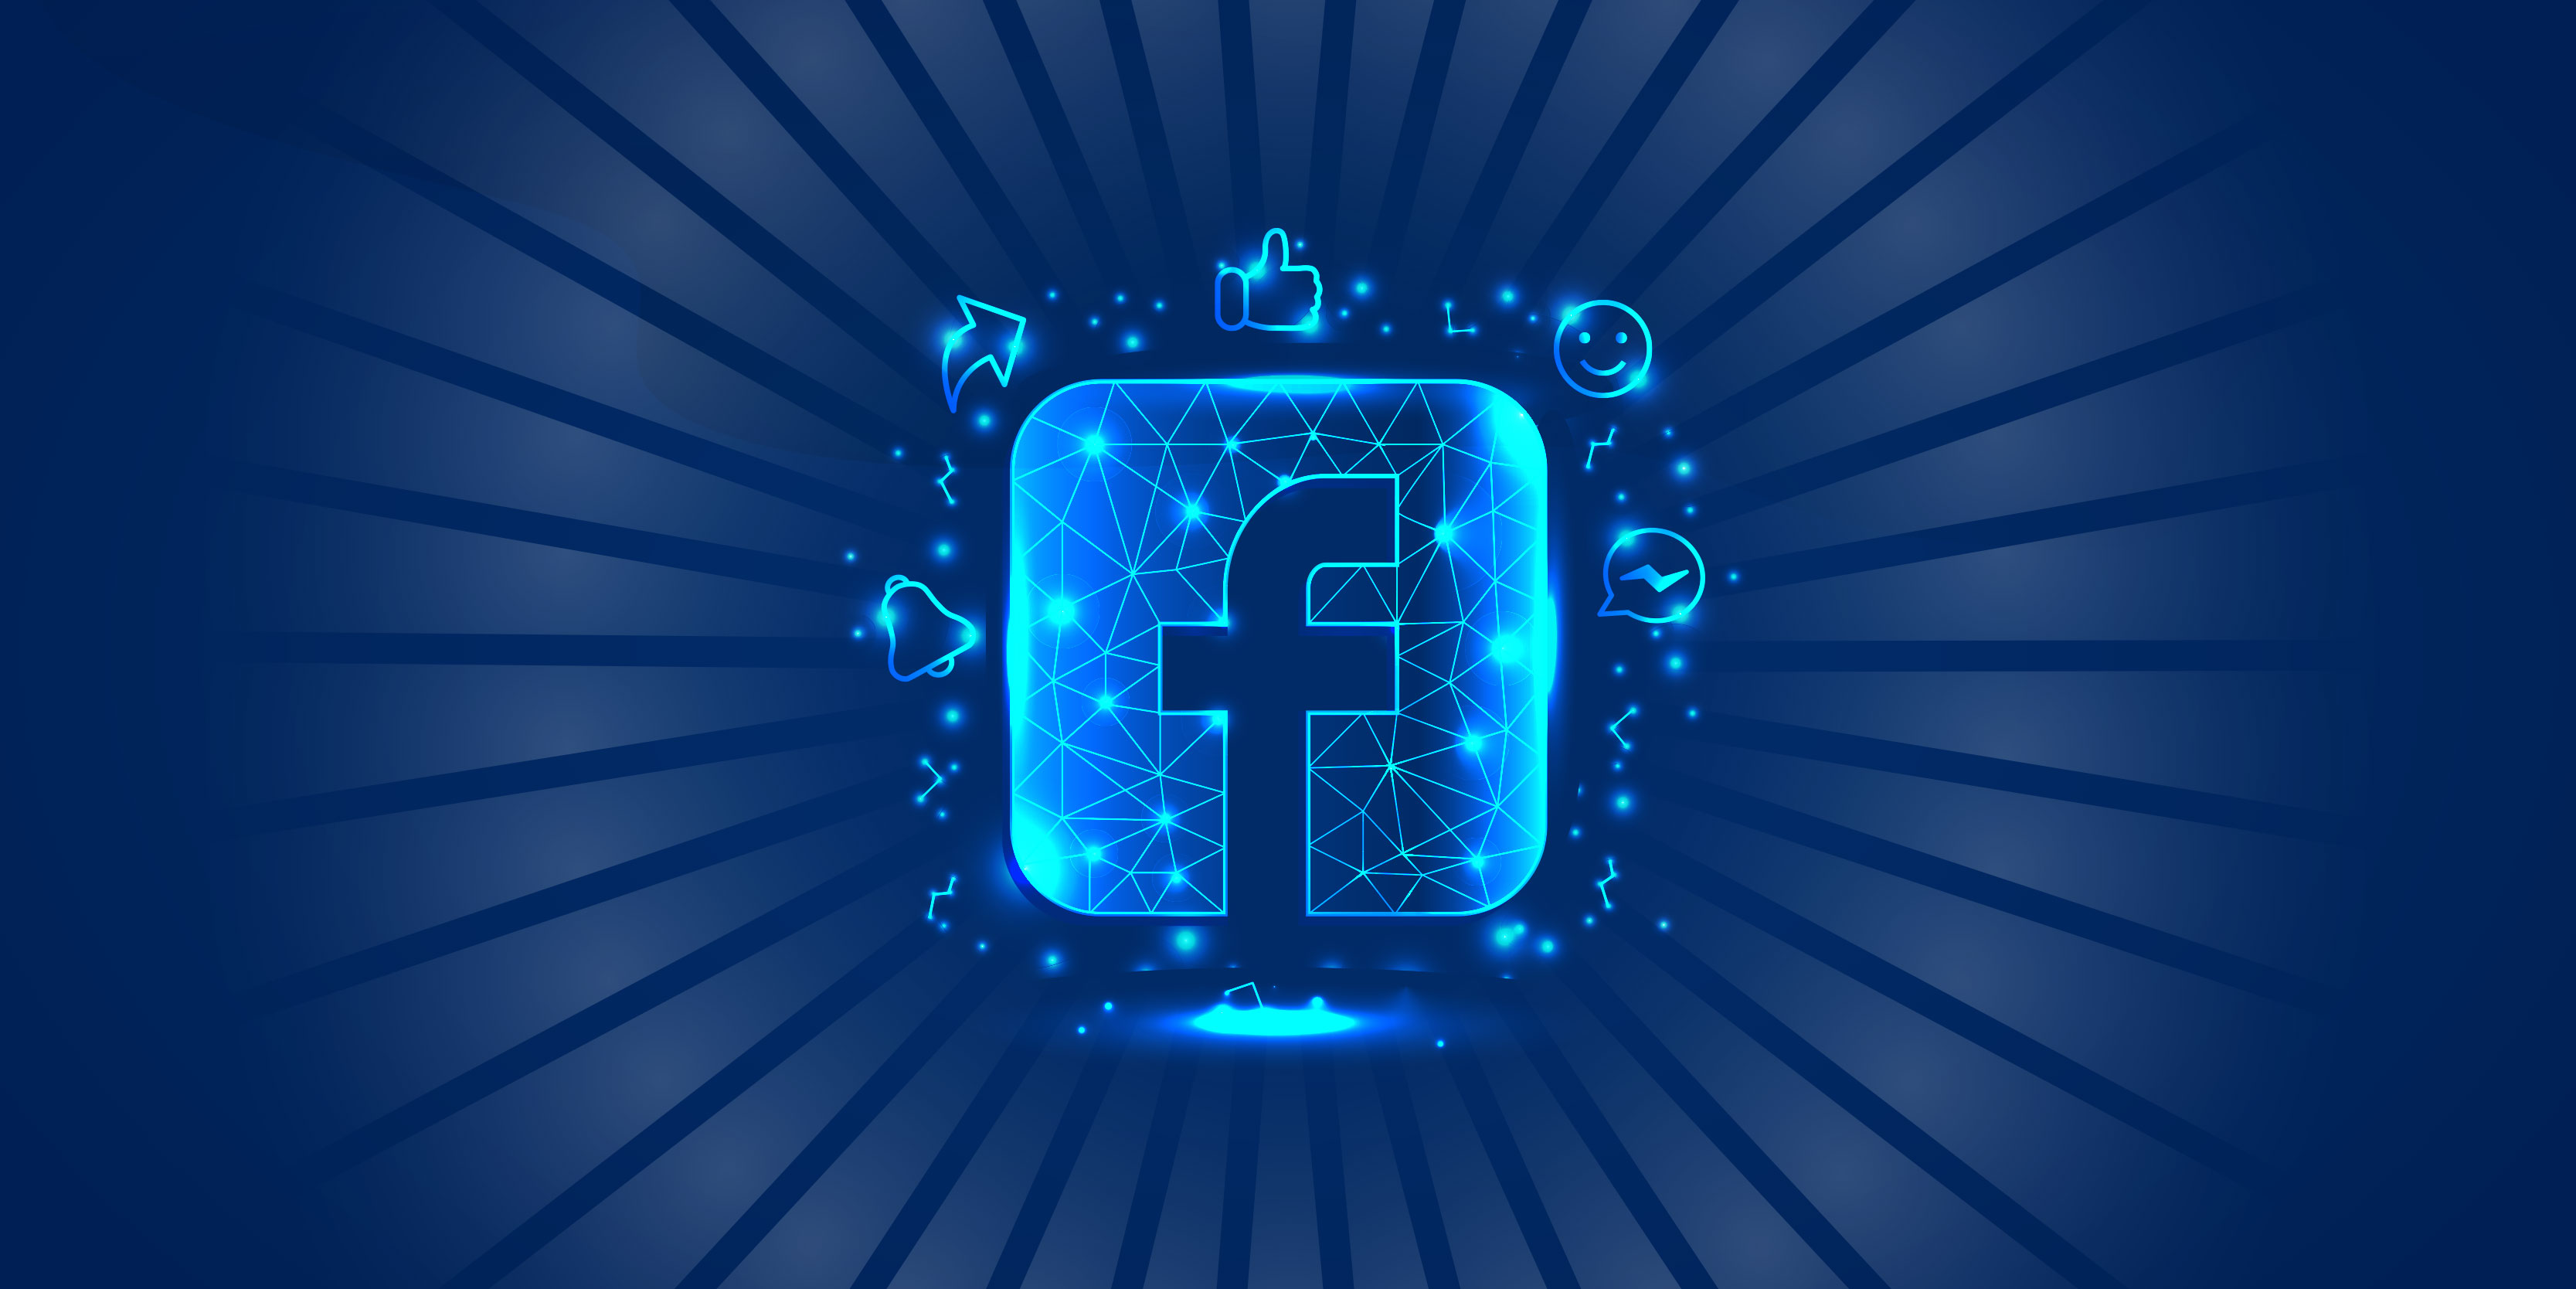 Kada vredi ulagati u Facebook oglase?